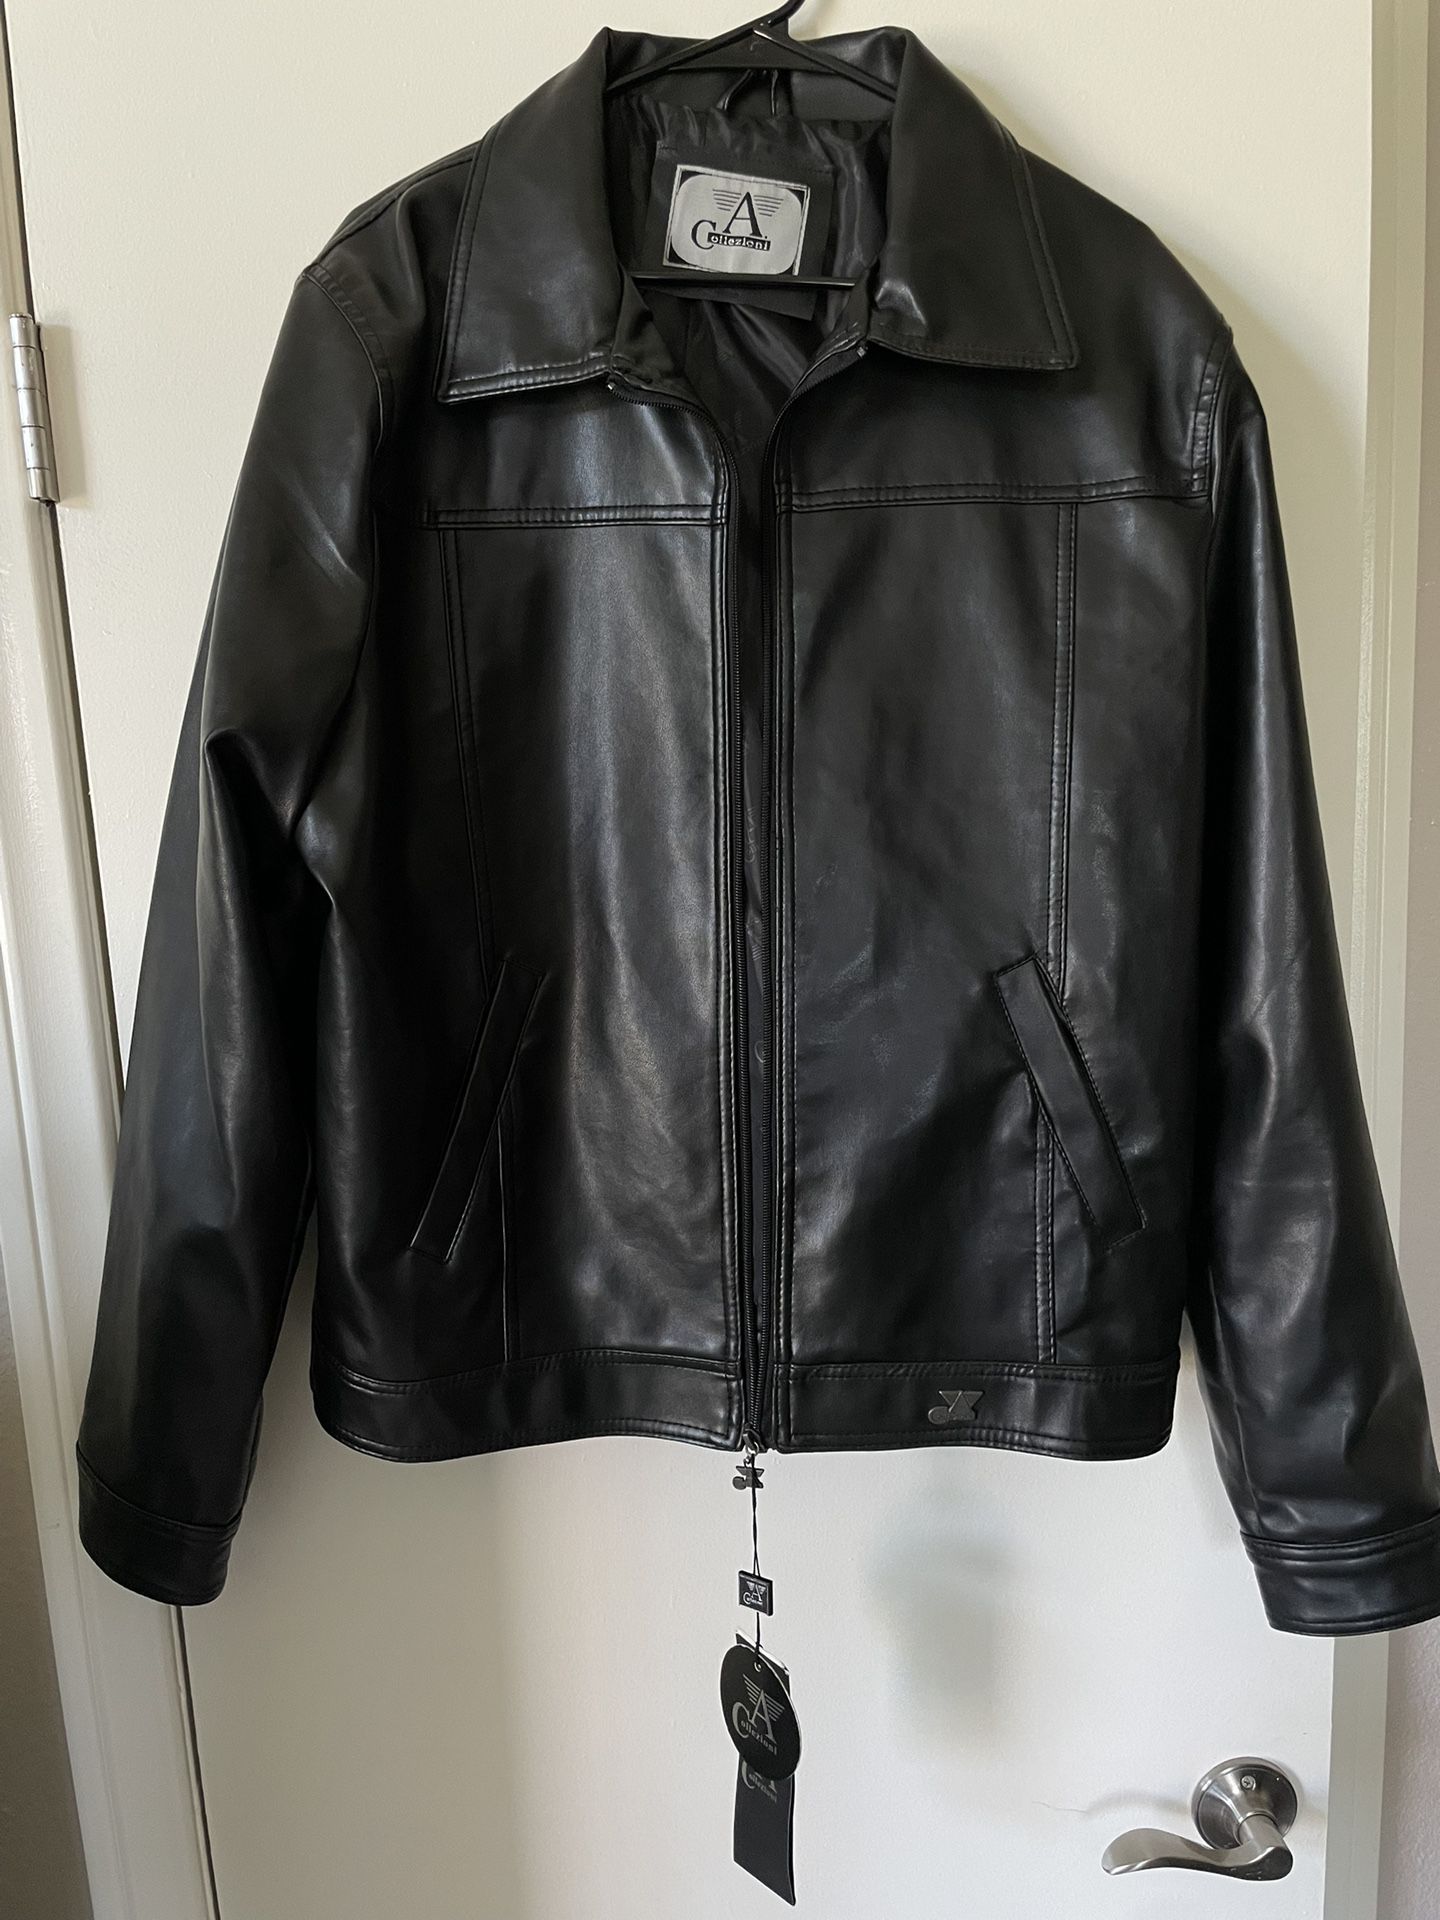 A Collezioni Black Leather Jacket